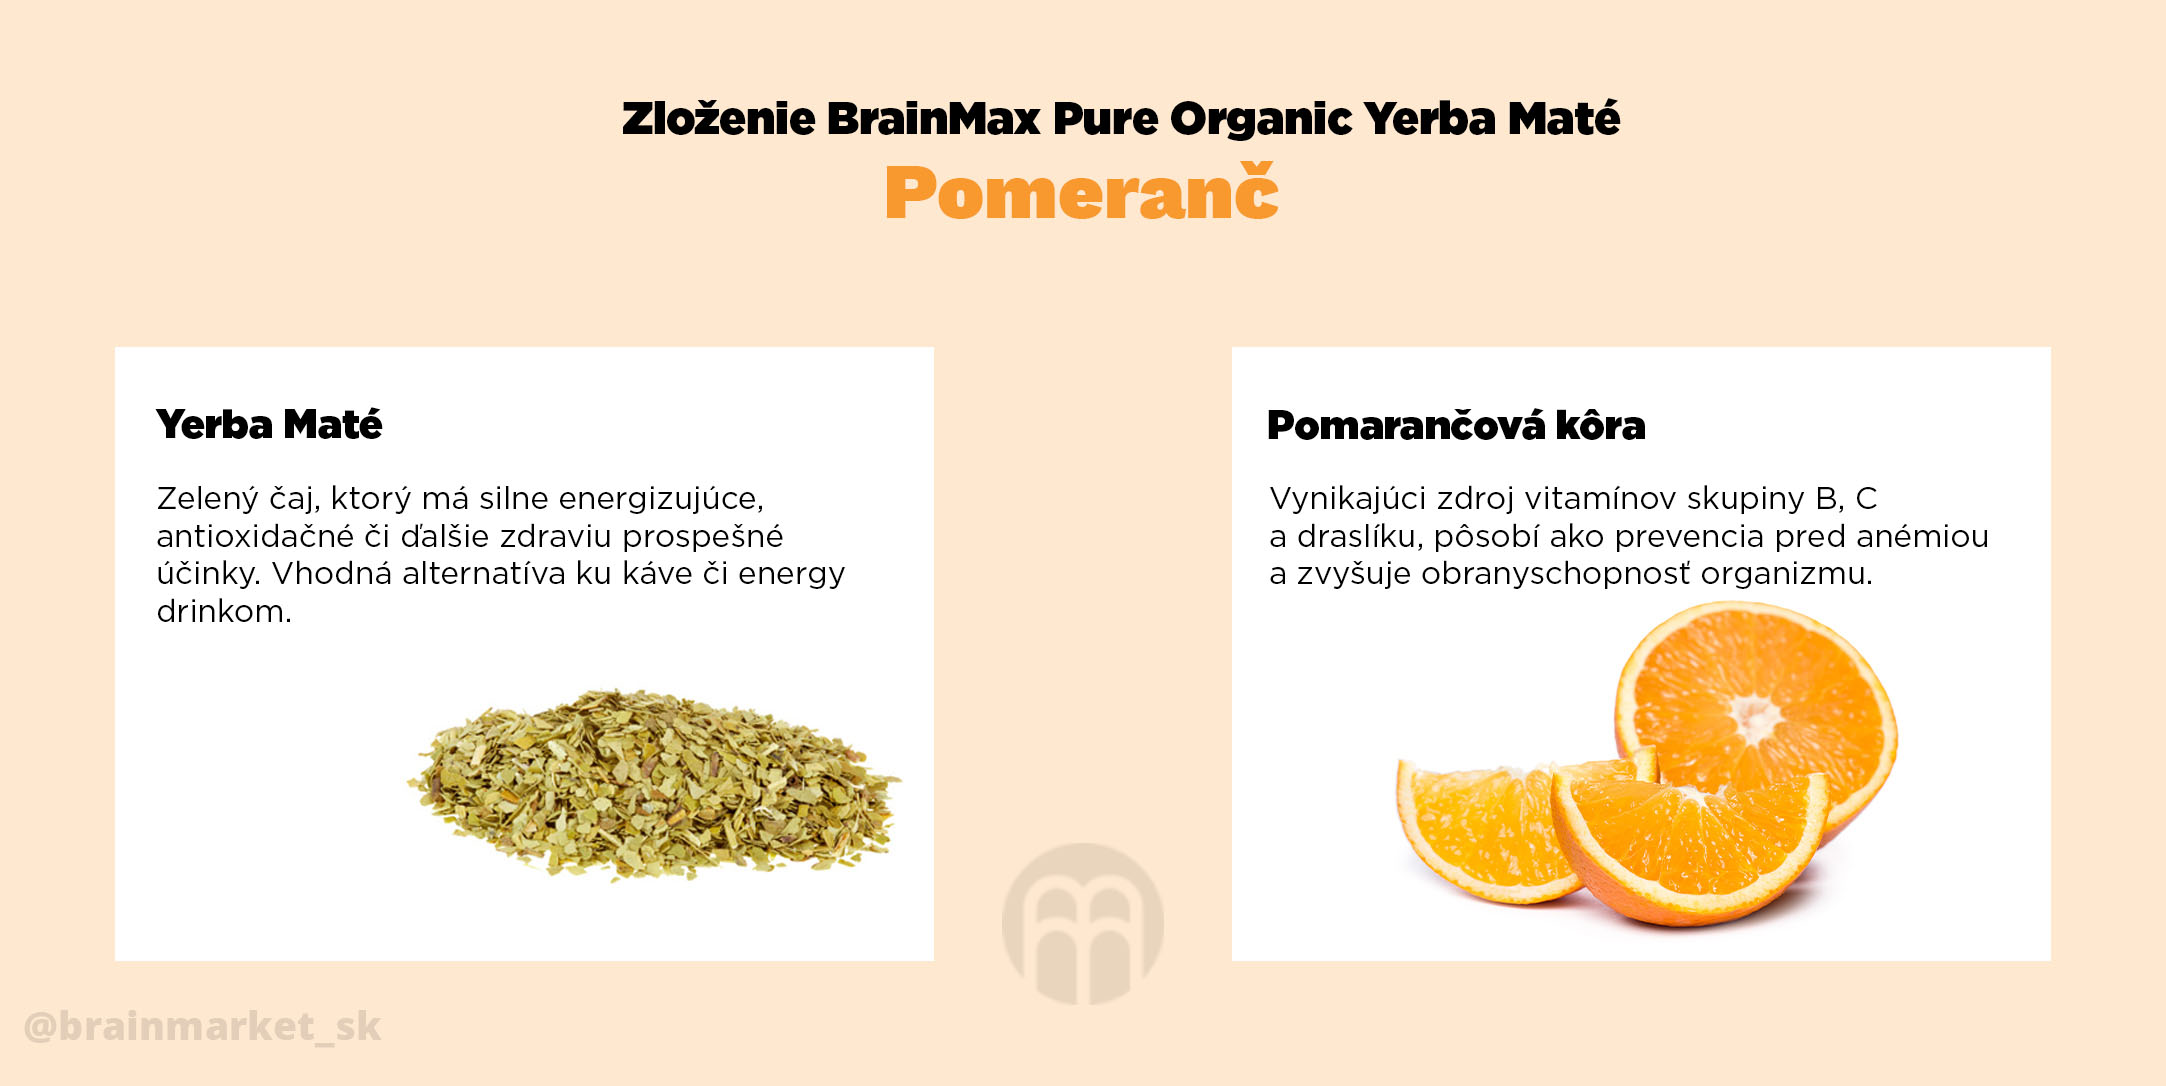 pomeranc slozeni yerby_infografika_brainmarket_sk